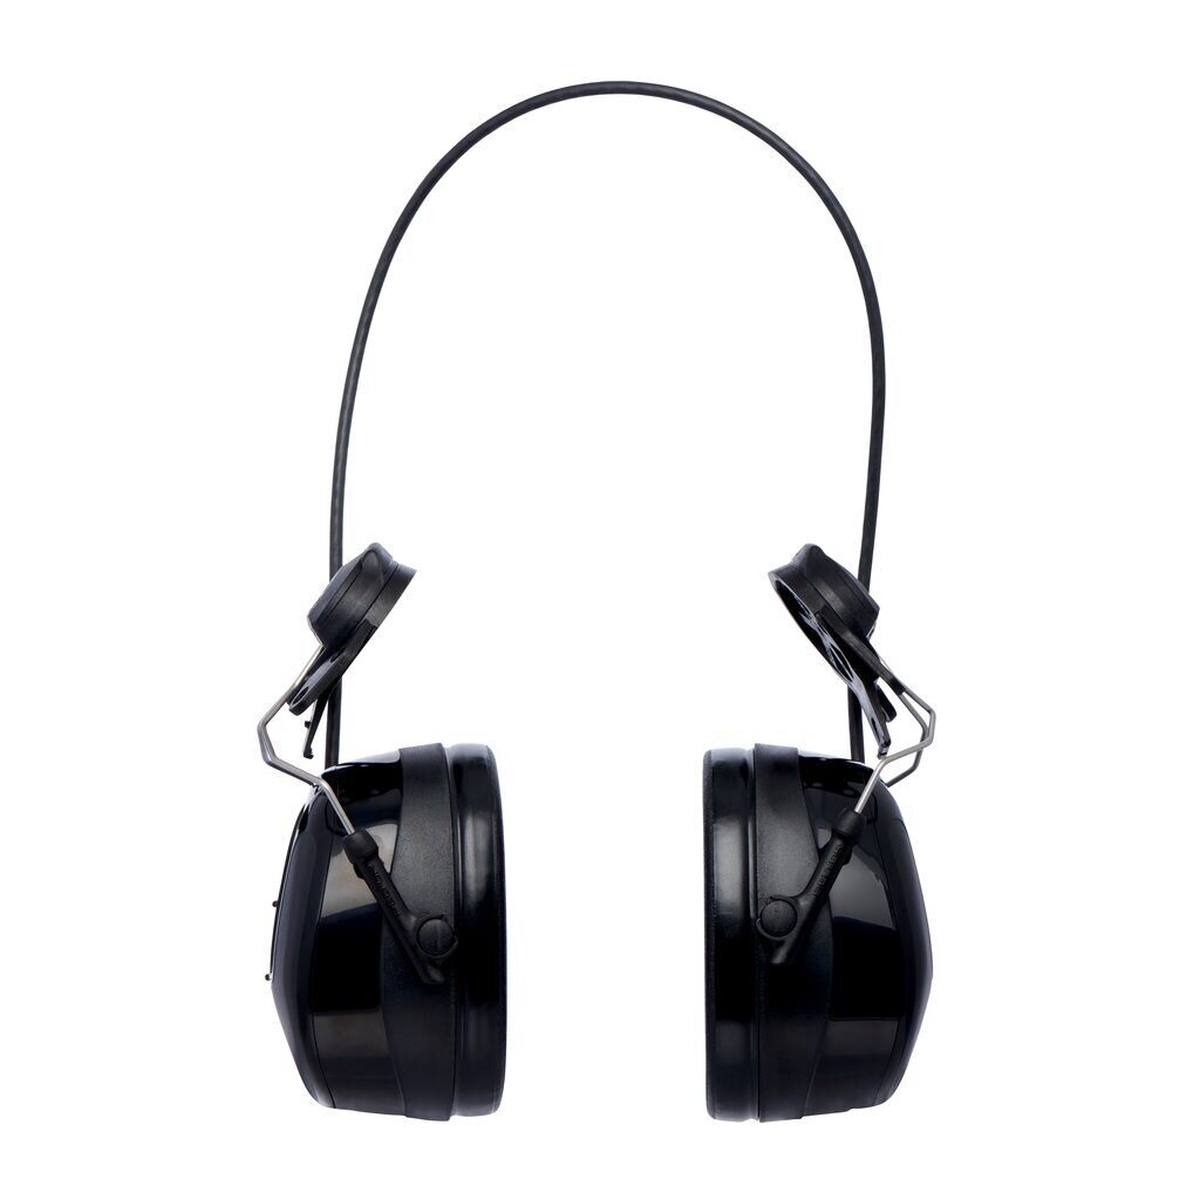 3M PELTOR WorkTunes Pro Cuffie di protezione dell'udito con radio FM, attacco per casco, nero